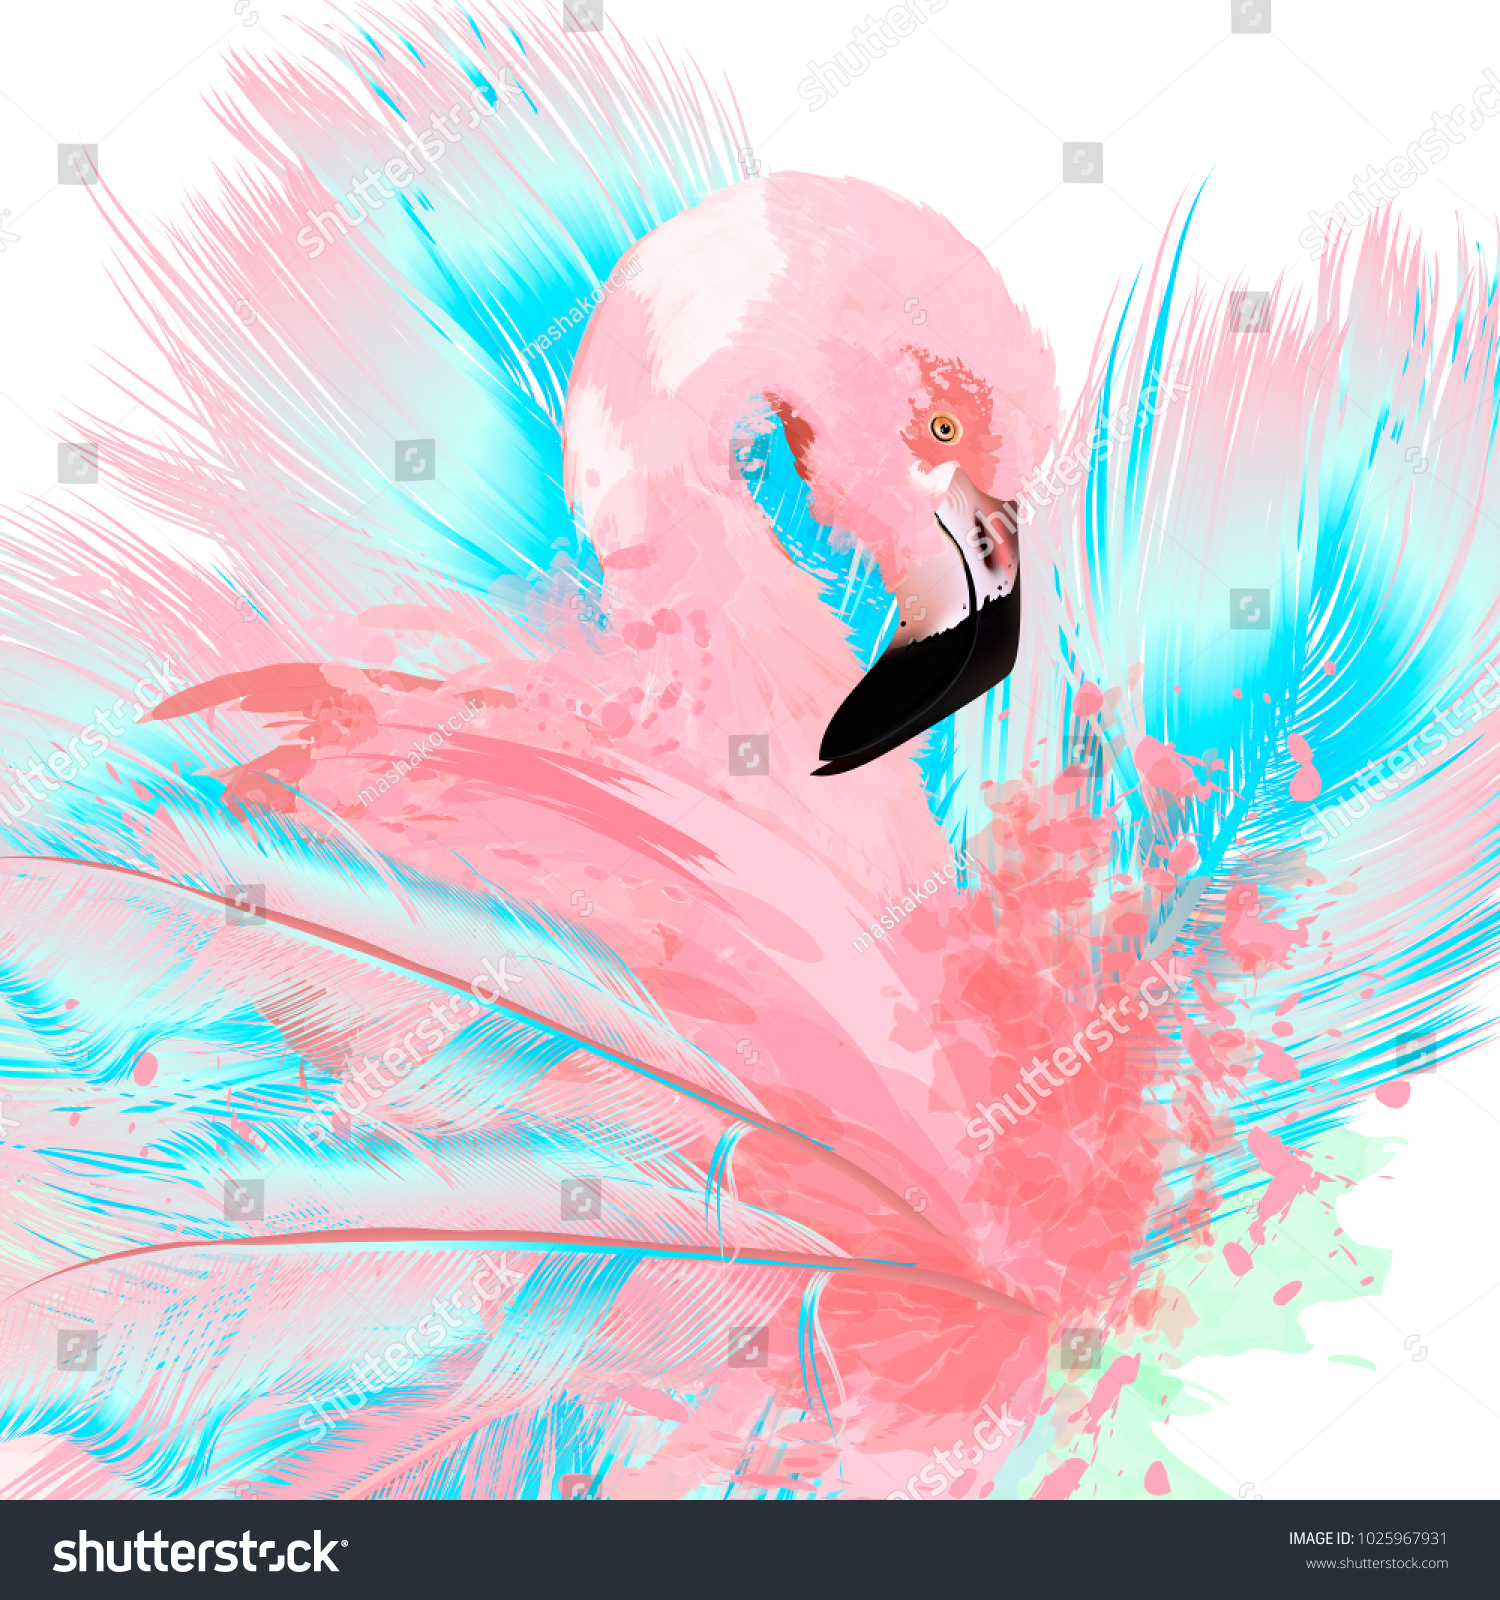 ピンクのフラミンゴと青い羽を描いた美しいベクターイラスト のベクター画像素材 ロイヤリティフリー